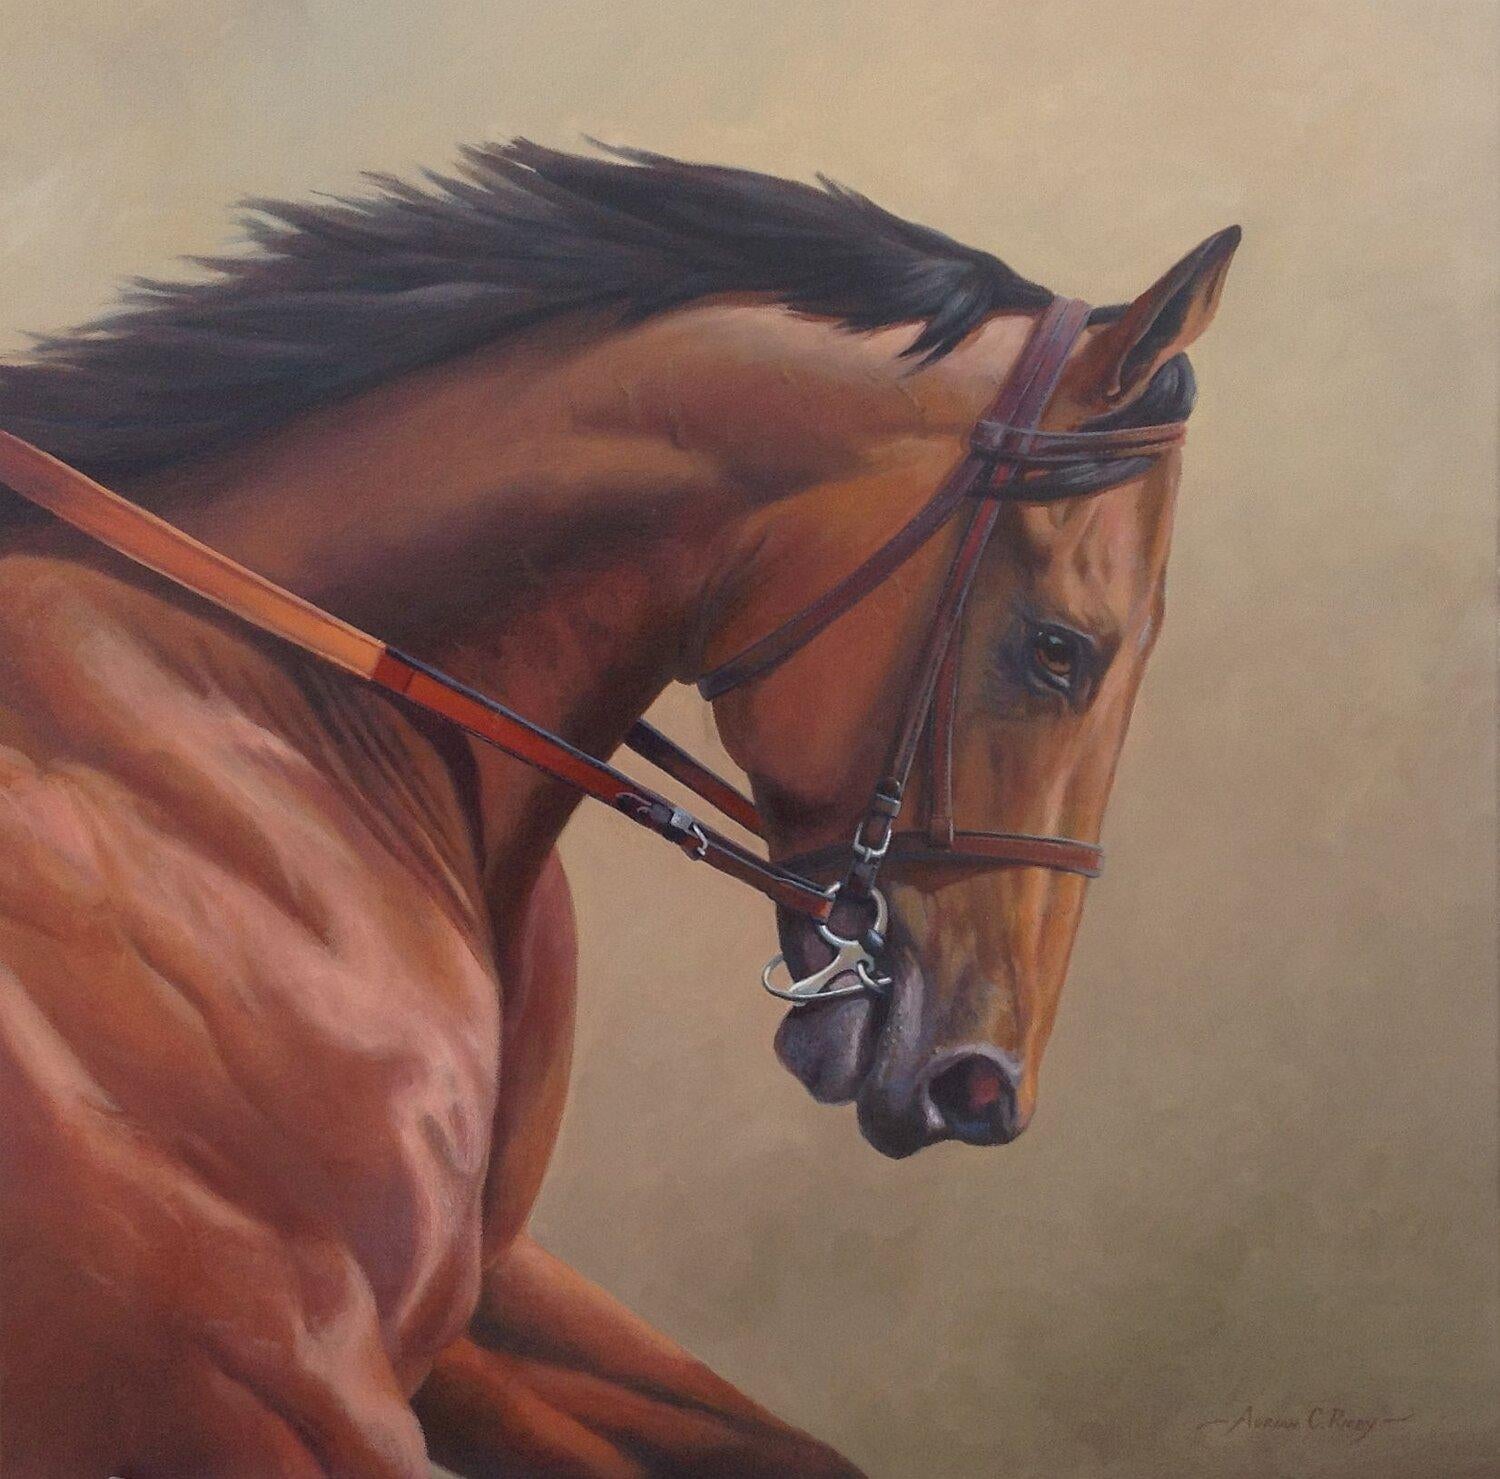 Dieses Werk, "Grace of a Champion", ist ein 24x24 großes Ölgemälde auf Leinwand des Künstlers Adrian Rigby, das ein Porträt des legendären Triple Crown-Gewinners American Pharoah zeigt.  Jedes Detail des Pferdes ist in diesem traditionellen Gemälde